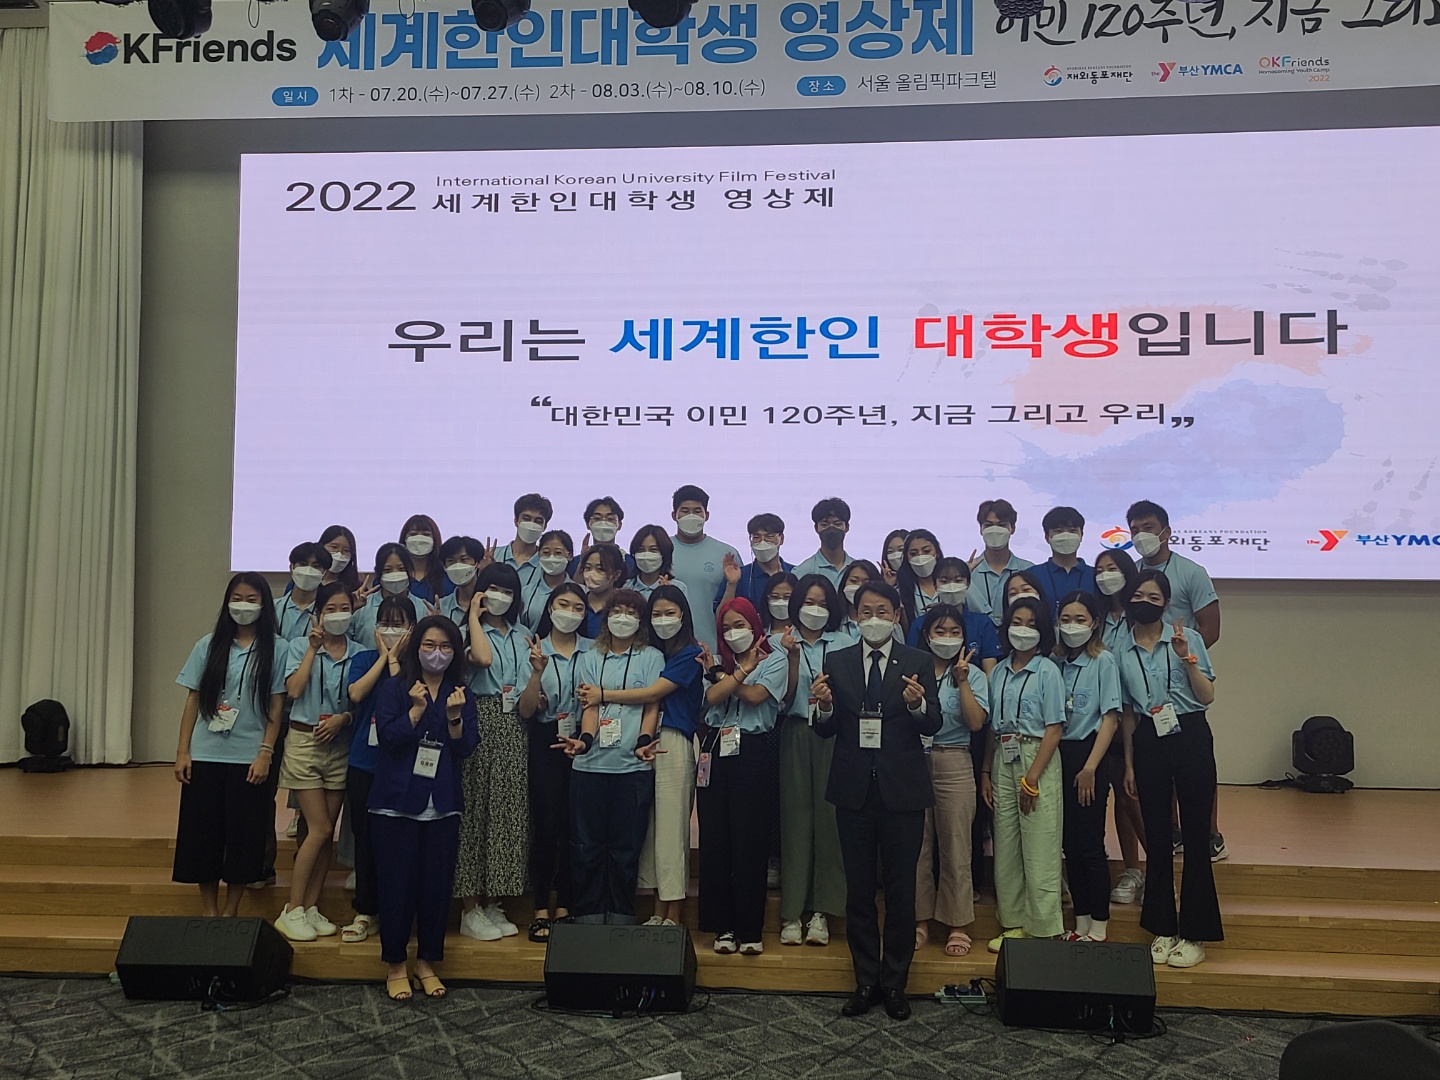 '세계한인대학생 영상제' 1차 예선 후 심사위원들과 공주 지역팀의 기념사진